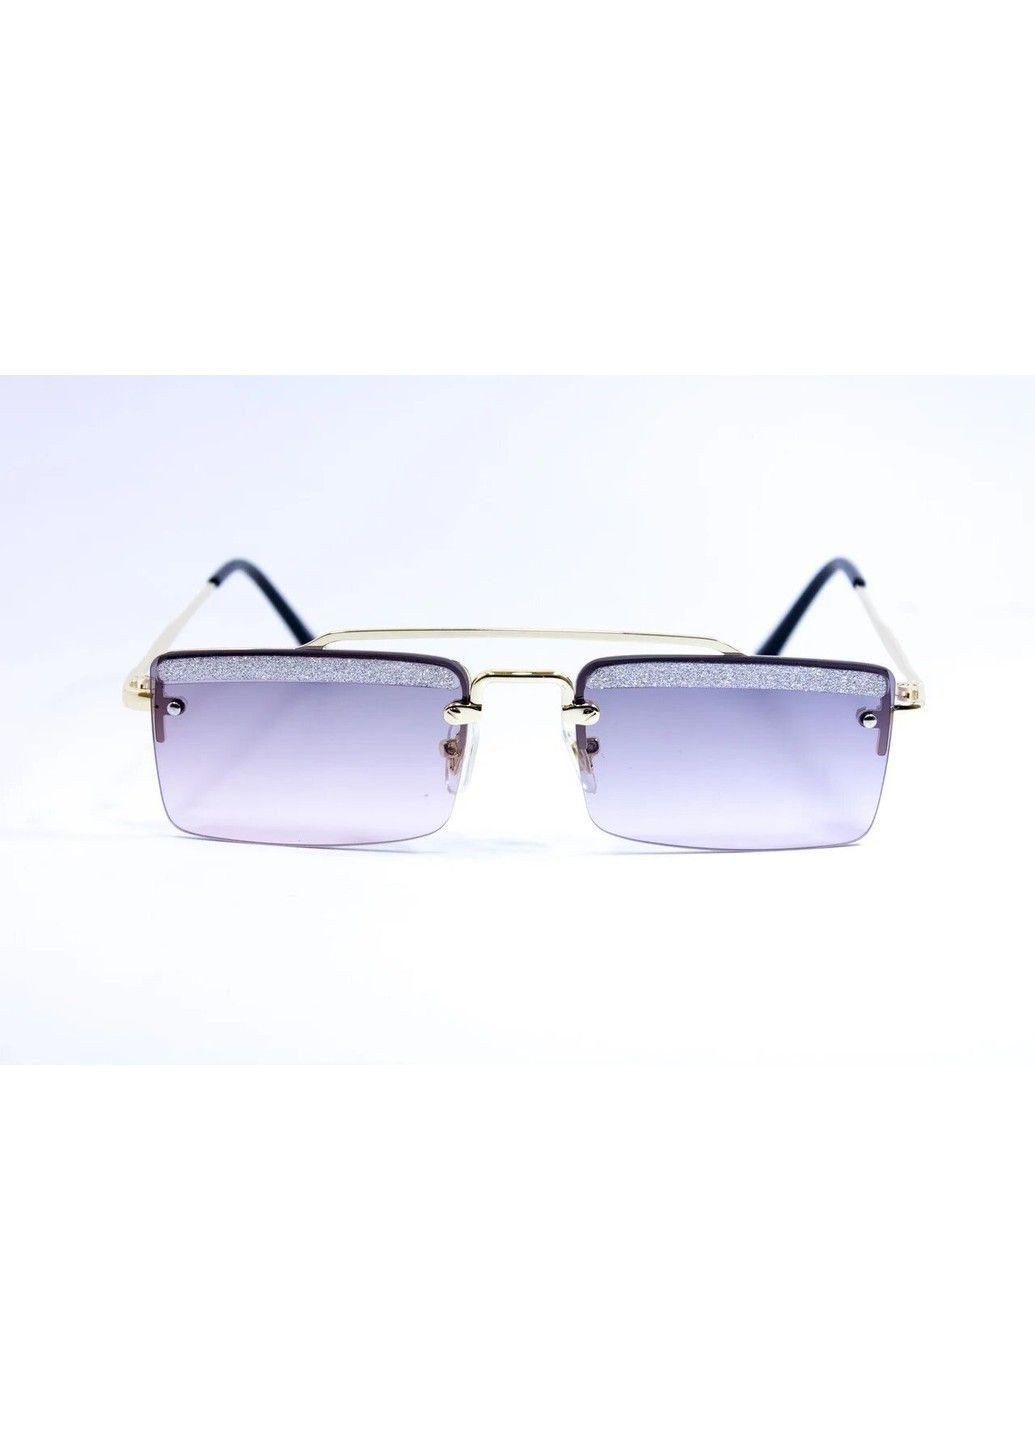 Cолнцезащитные женские очки 0344-6 BR-S (291984098)